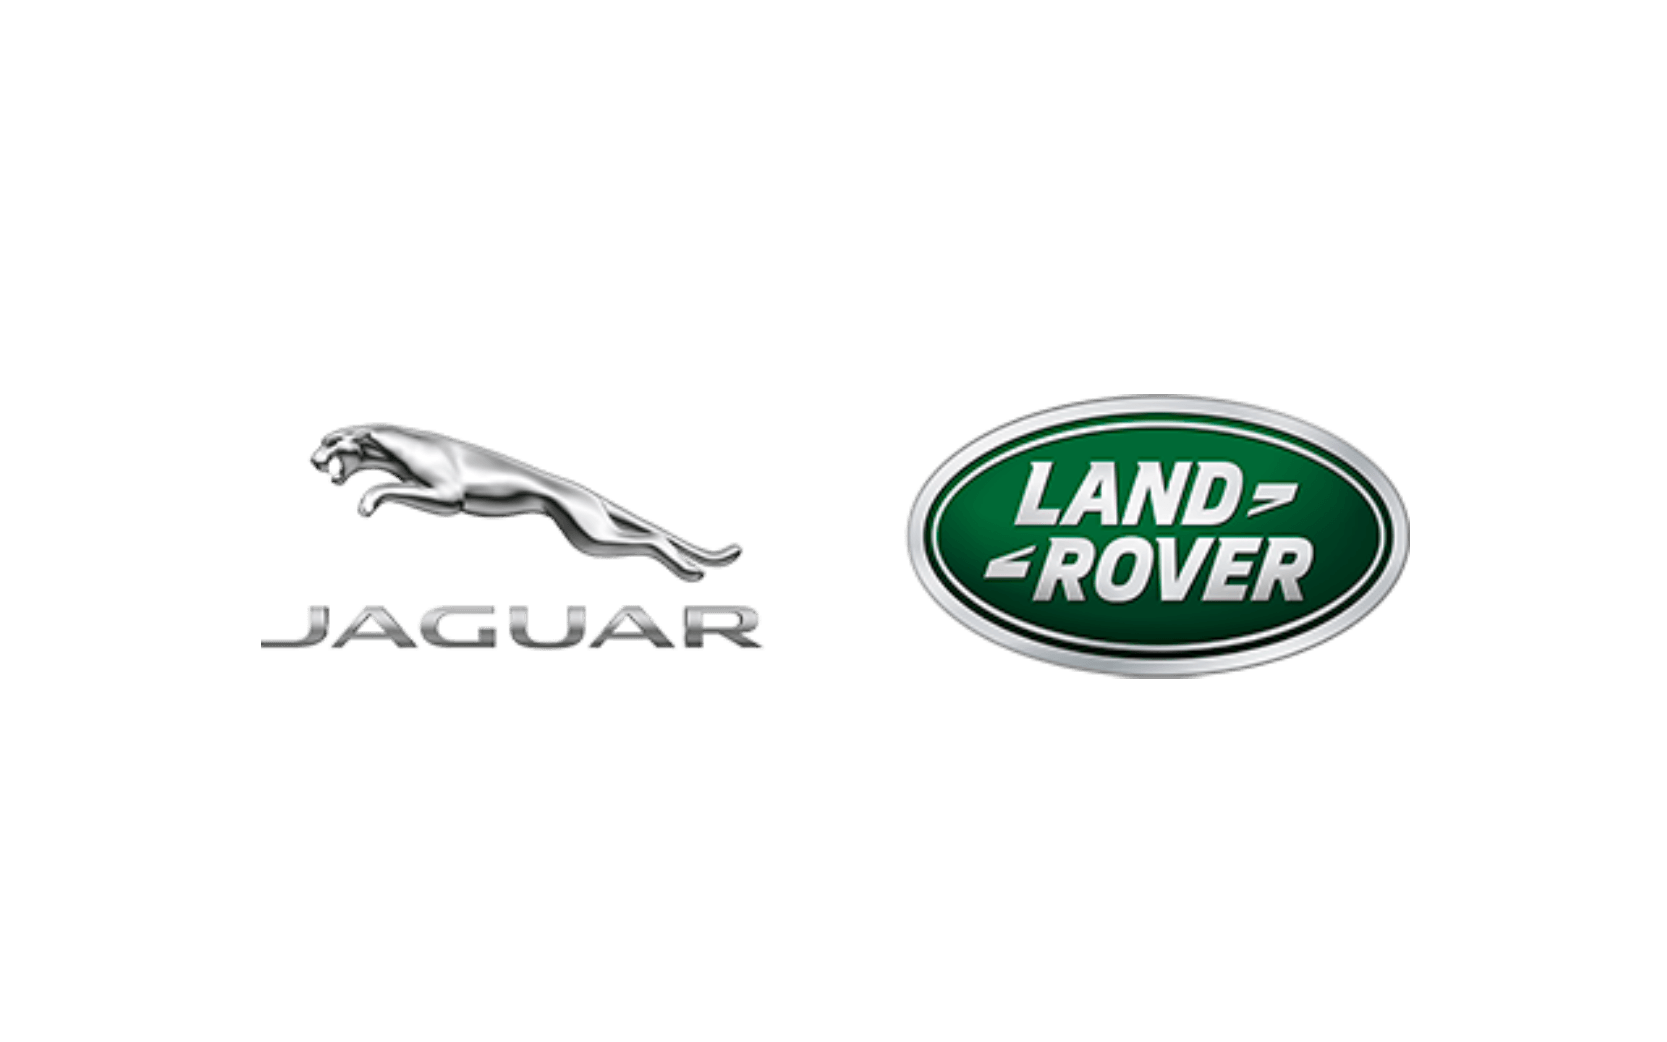 Jaguar Land Rover - case study 1